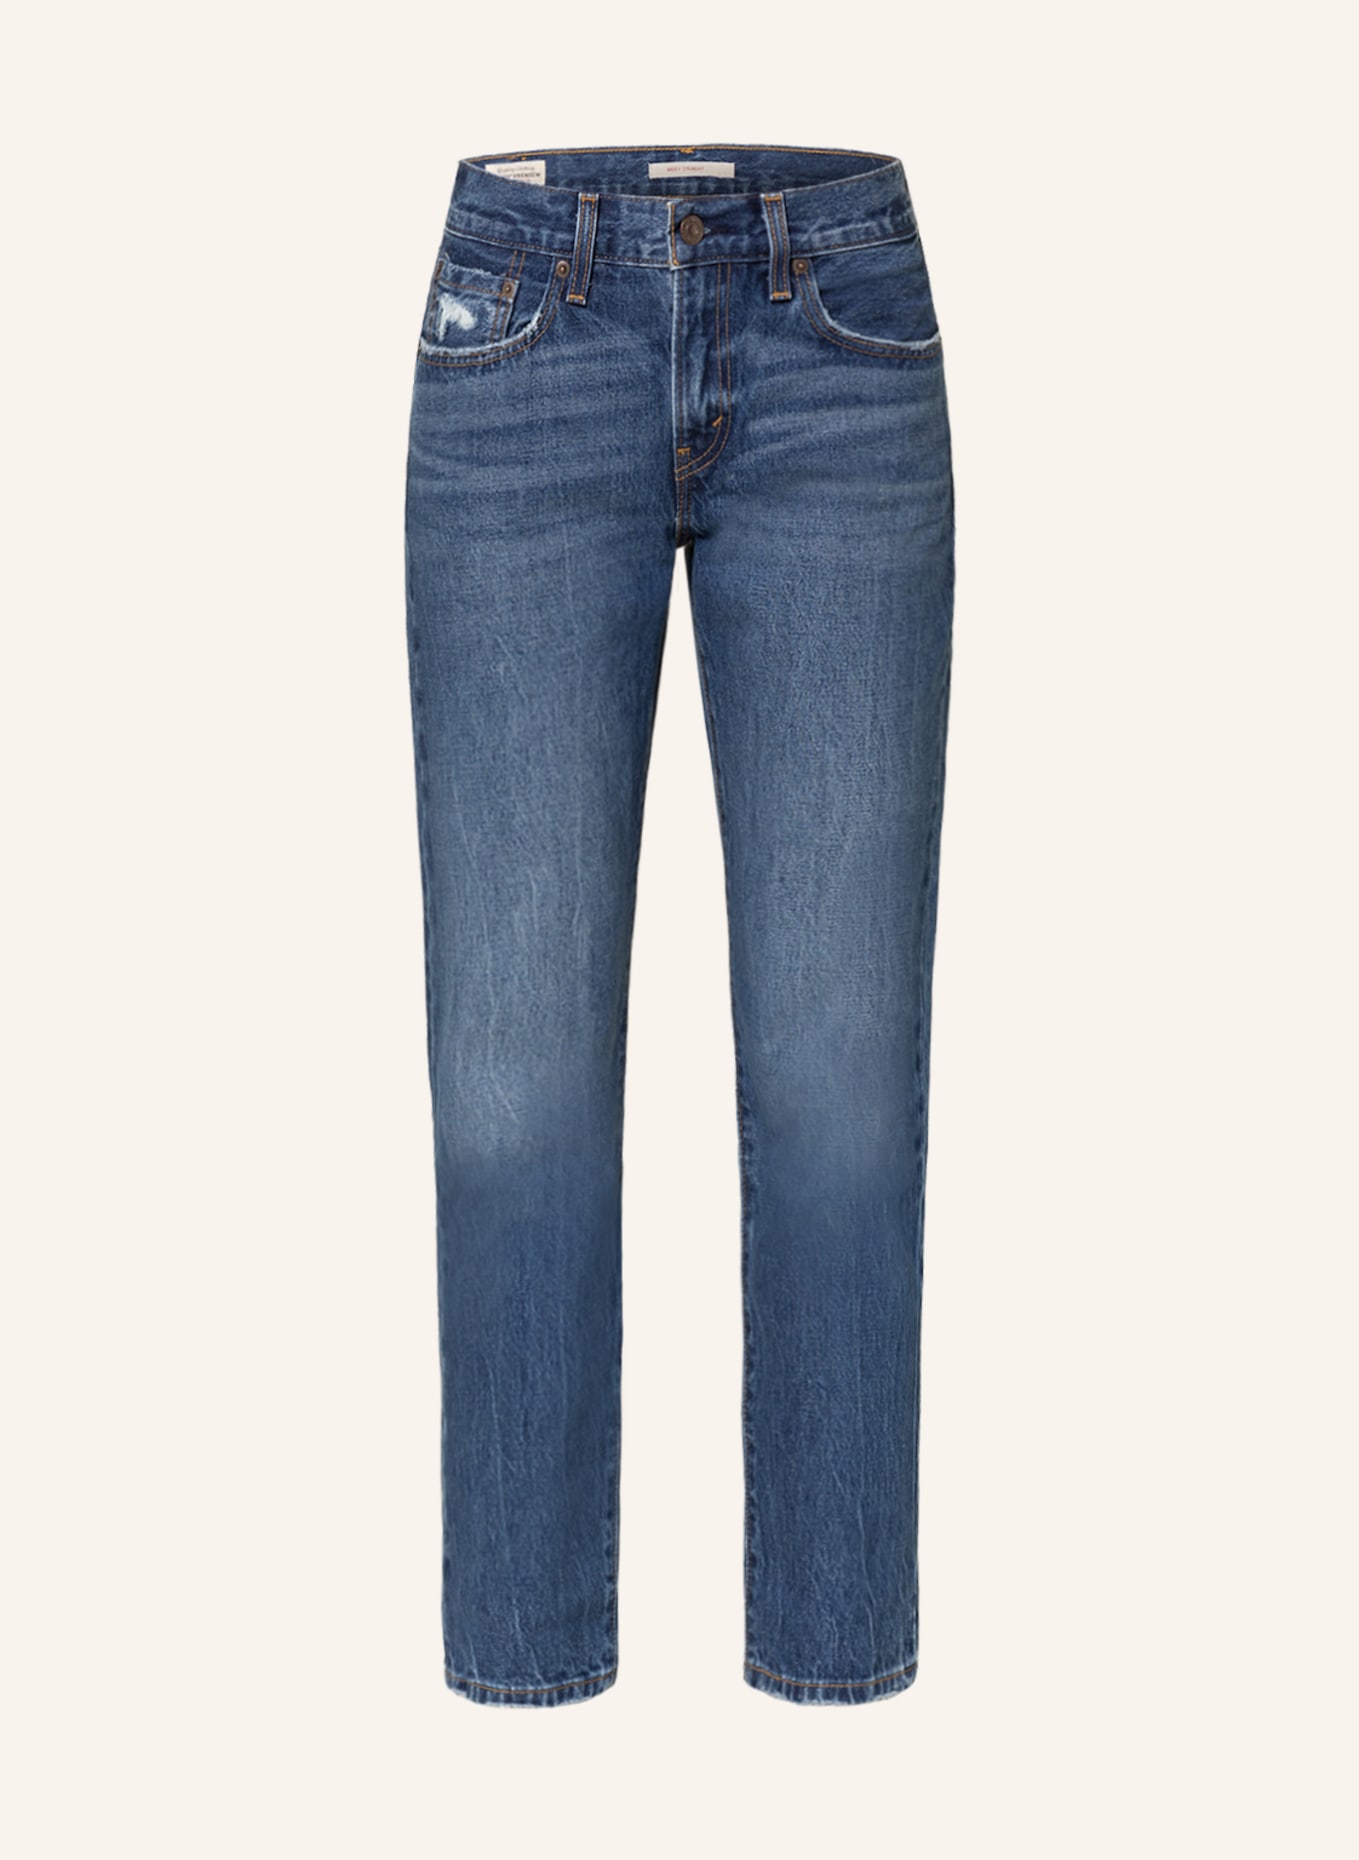 Levi's® Straigh Jeans MIDDY STRAIGHT, Farbe: 01 Dark Indigo - Worn In (Bild 1)